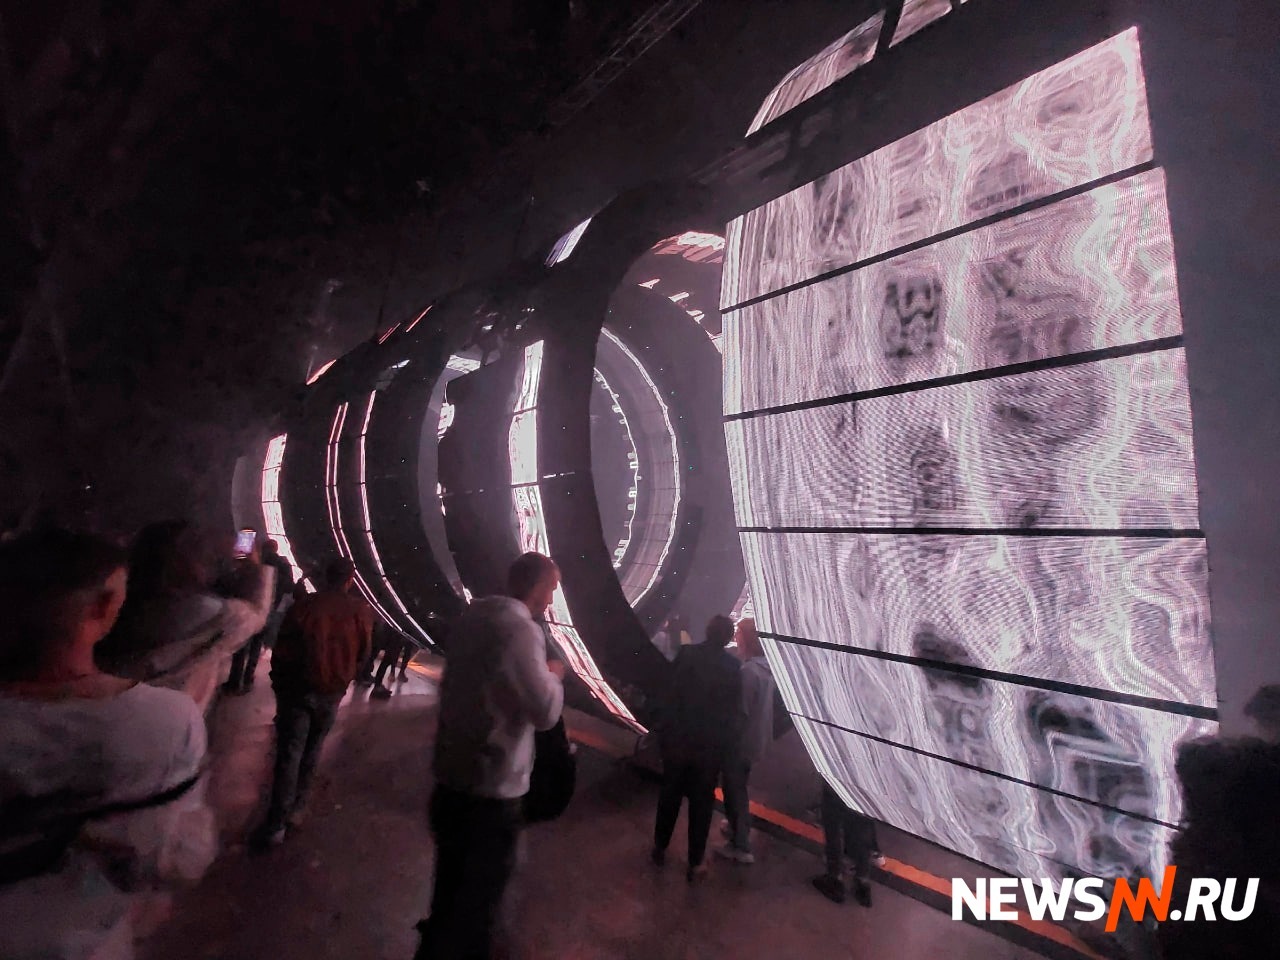 Нижегородцев удивила инсталляция COIL с кольцевыми экранами от студии «С Е Т А П»